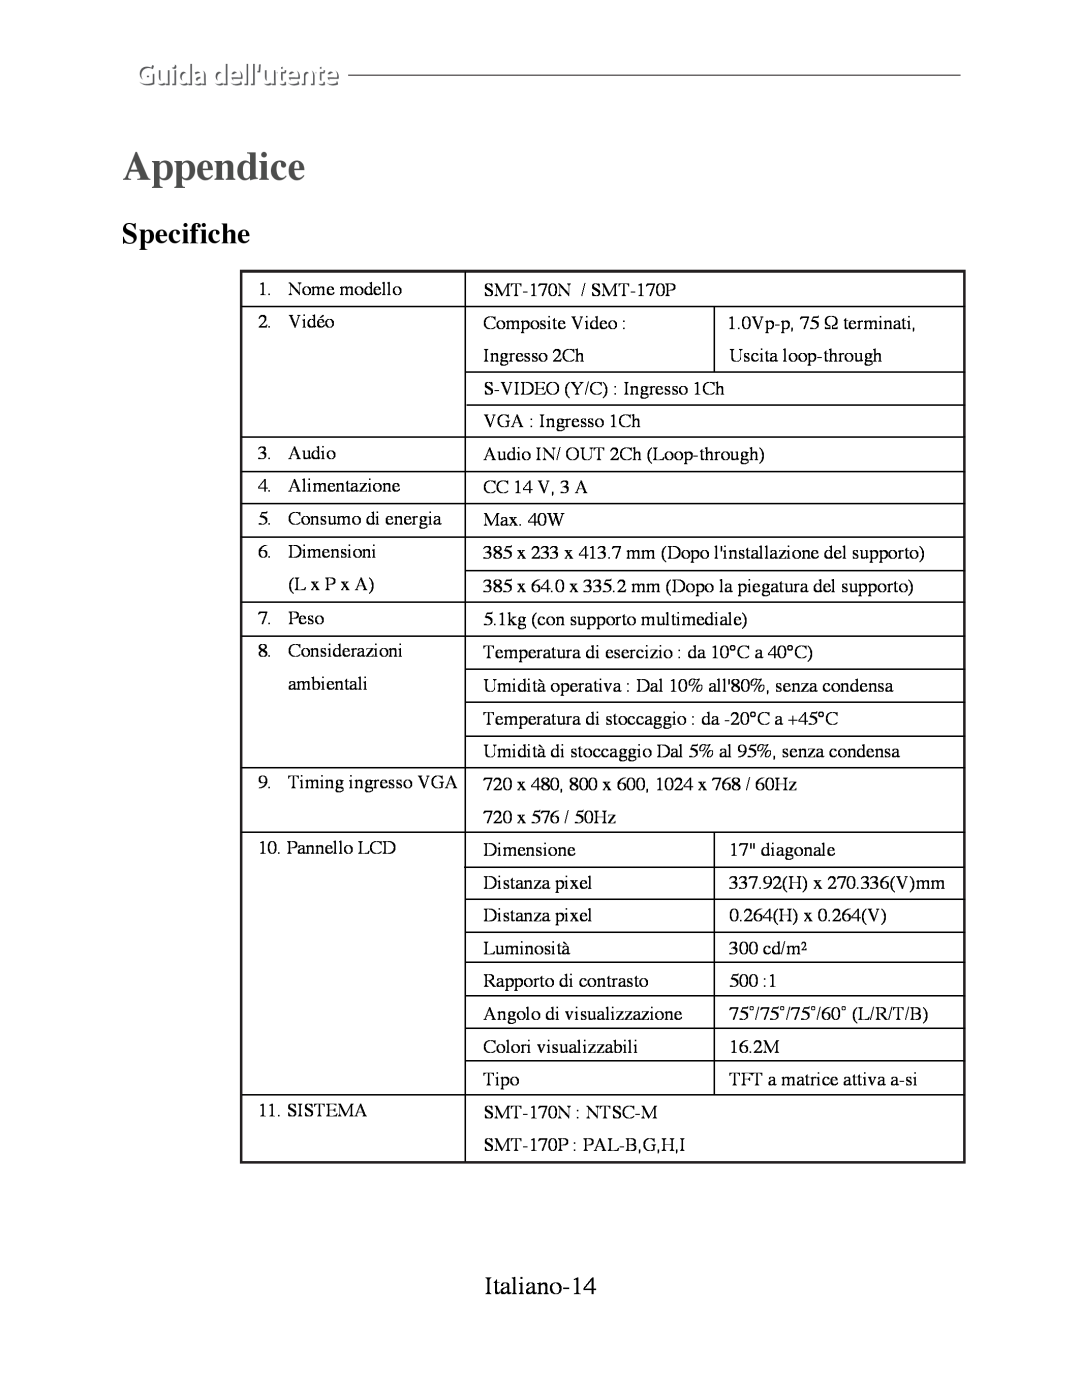 Samsung SMT-170P manual Appendice, Specifiche, Italiano-14 